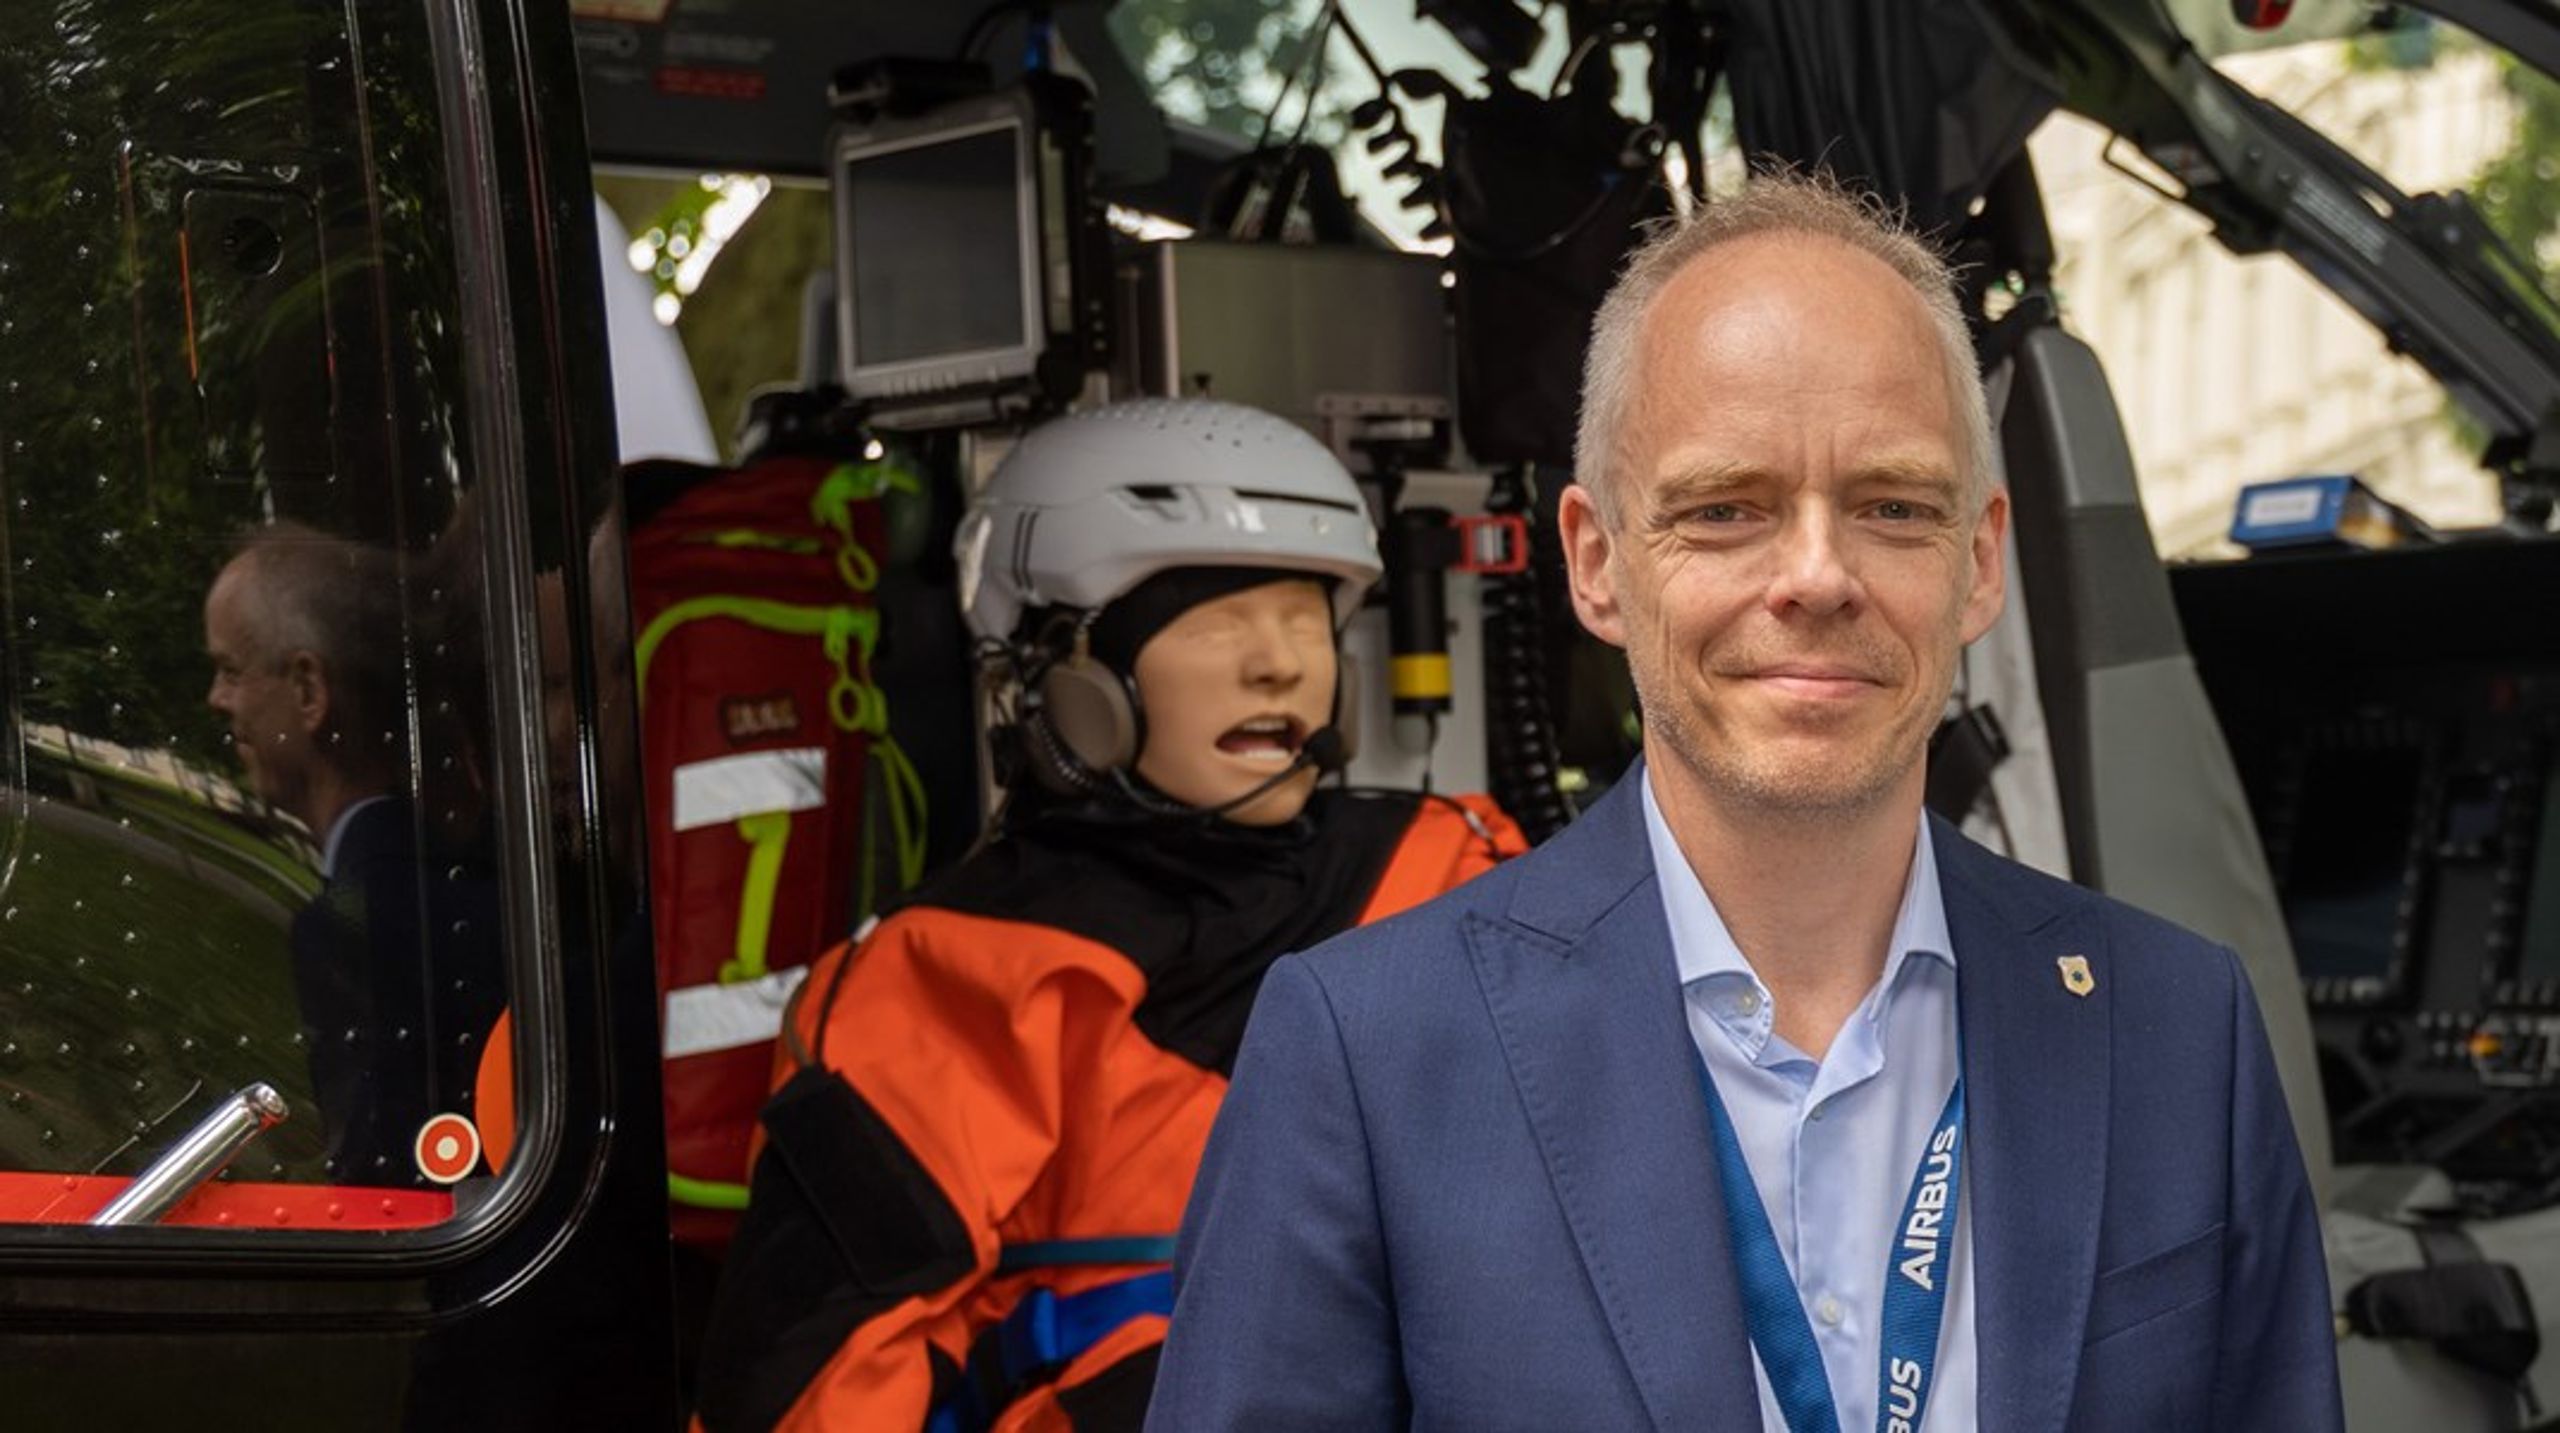 Stephen Sollid har lang fartstid som luftambulanselege. Nå slutter han i stillingen som leder av prehospital klinikk ved OUS, og blir generalsekretær i Stiftelsen Norsk Luftambulanse.